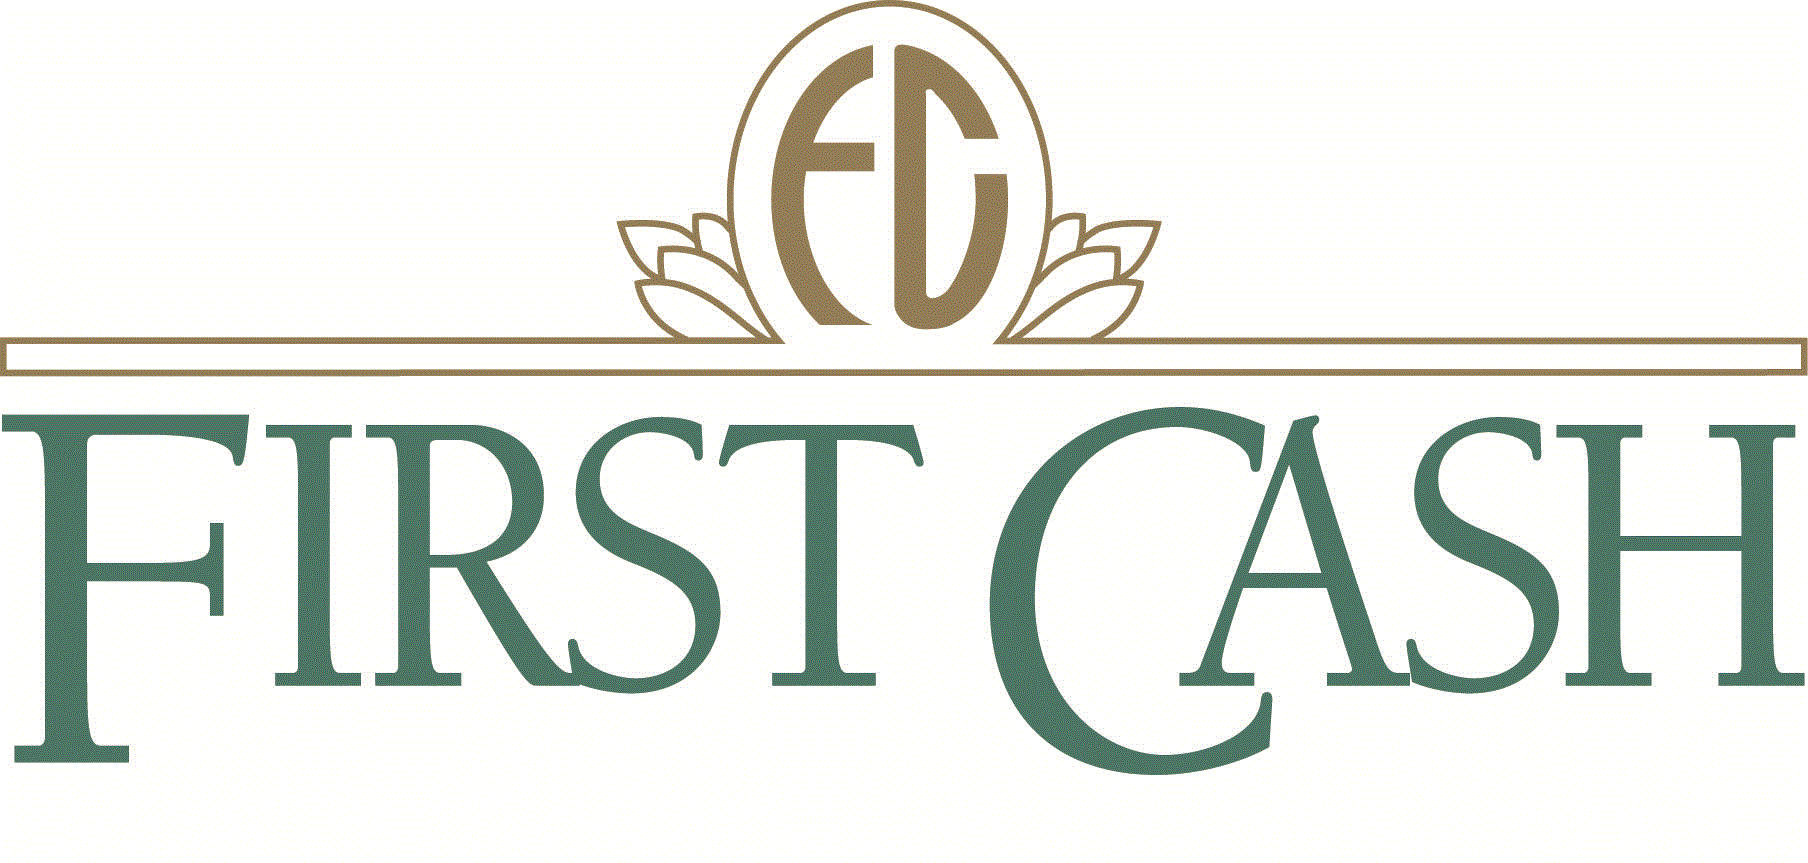 Cash Report Logo - Firstcash, Inc (FCFS) 10 K Annual Report Thu Feb 12 2015